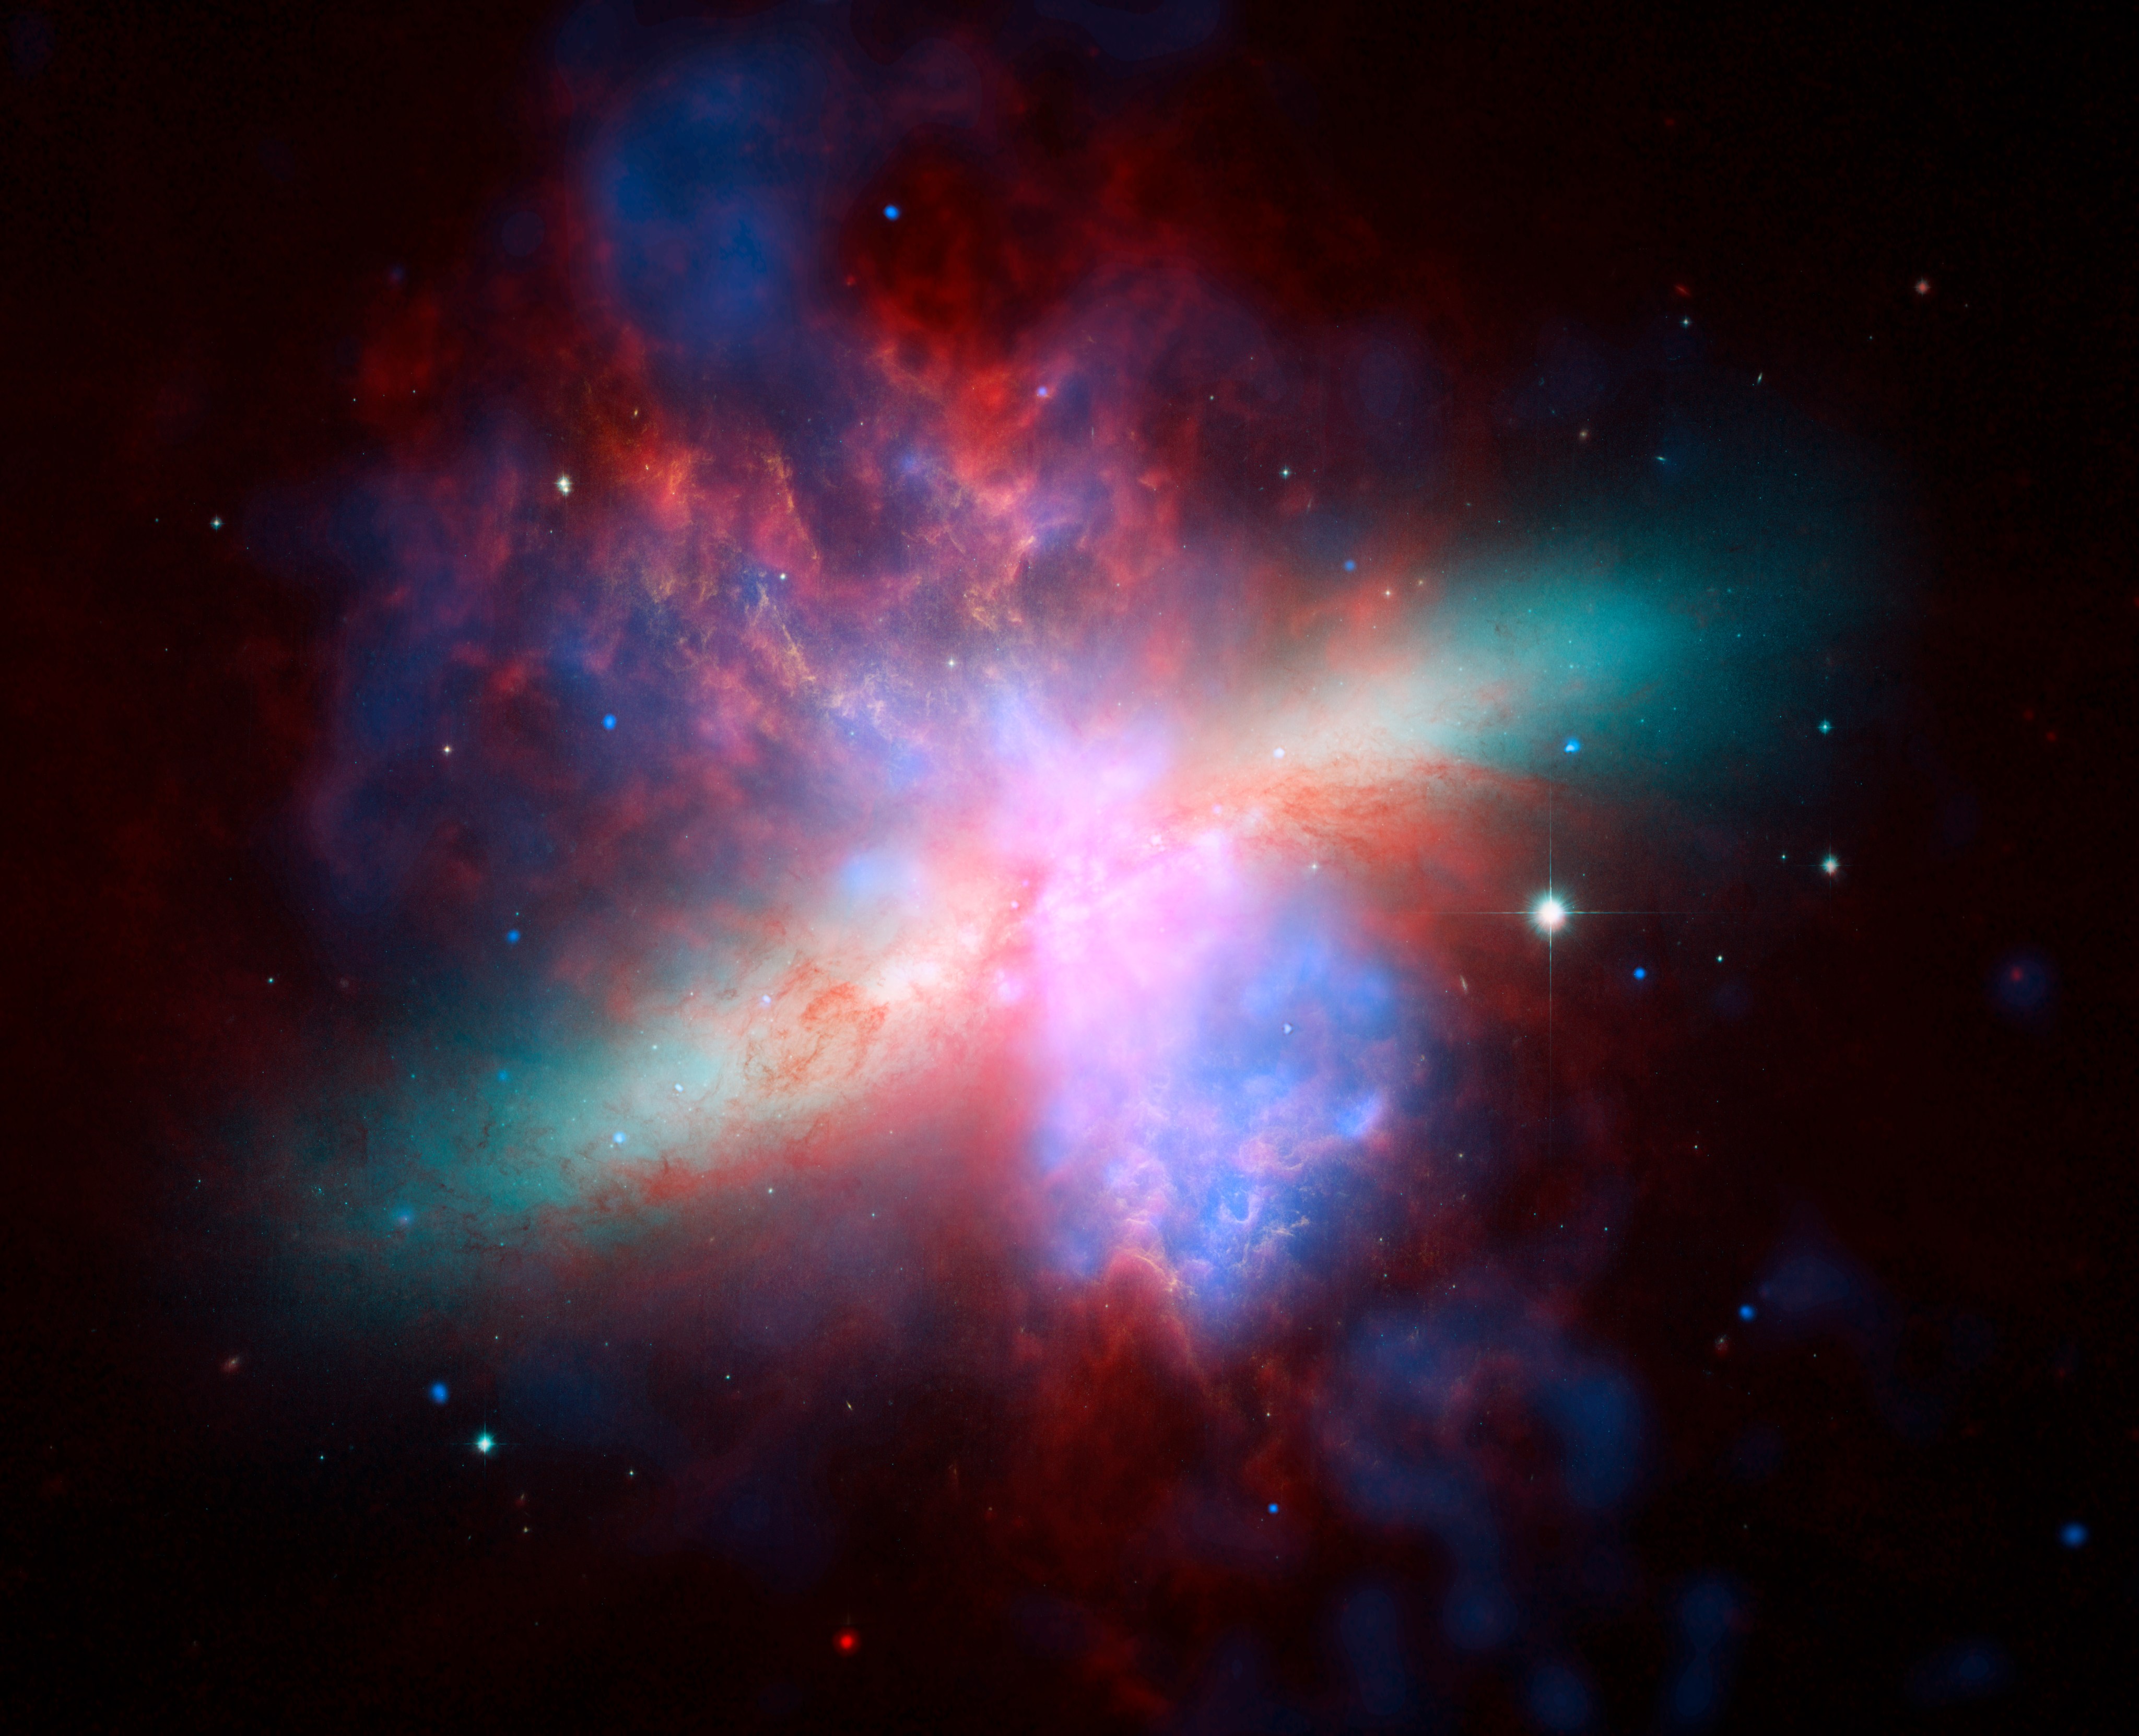 美国国家航空航天局的斯皮策、哈勃和钱德拉空间天文台联合制作了这张M82星系的多波长视图。这幅生动的肖像画庆祝了哈勃“甜蜜的十六岁”生日。钱德拉记录的X射线数据显示为蓝色；斯皮策望远镜记录的红外光显示为红色；哈勃对氢发射的观测结果显示为橙色，最蓝的可见光显示为黄绿色。